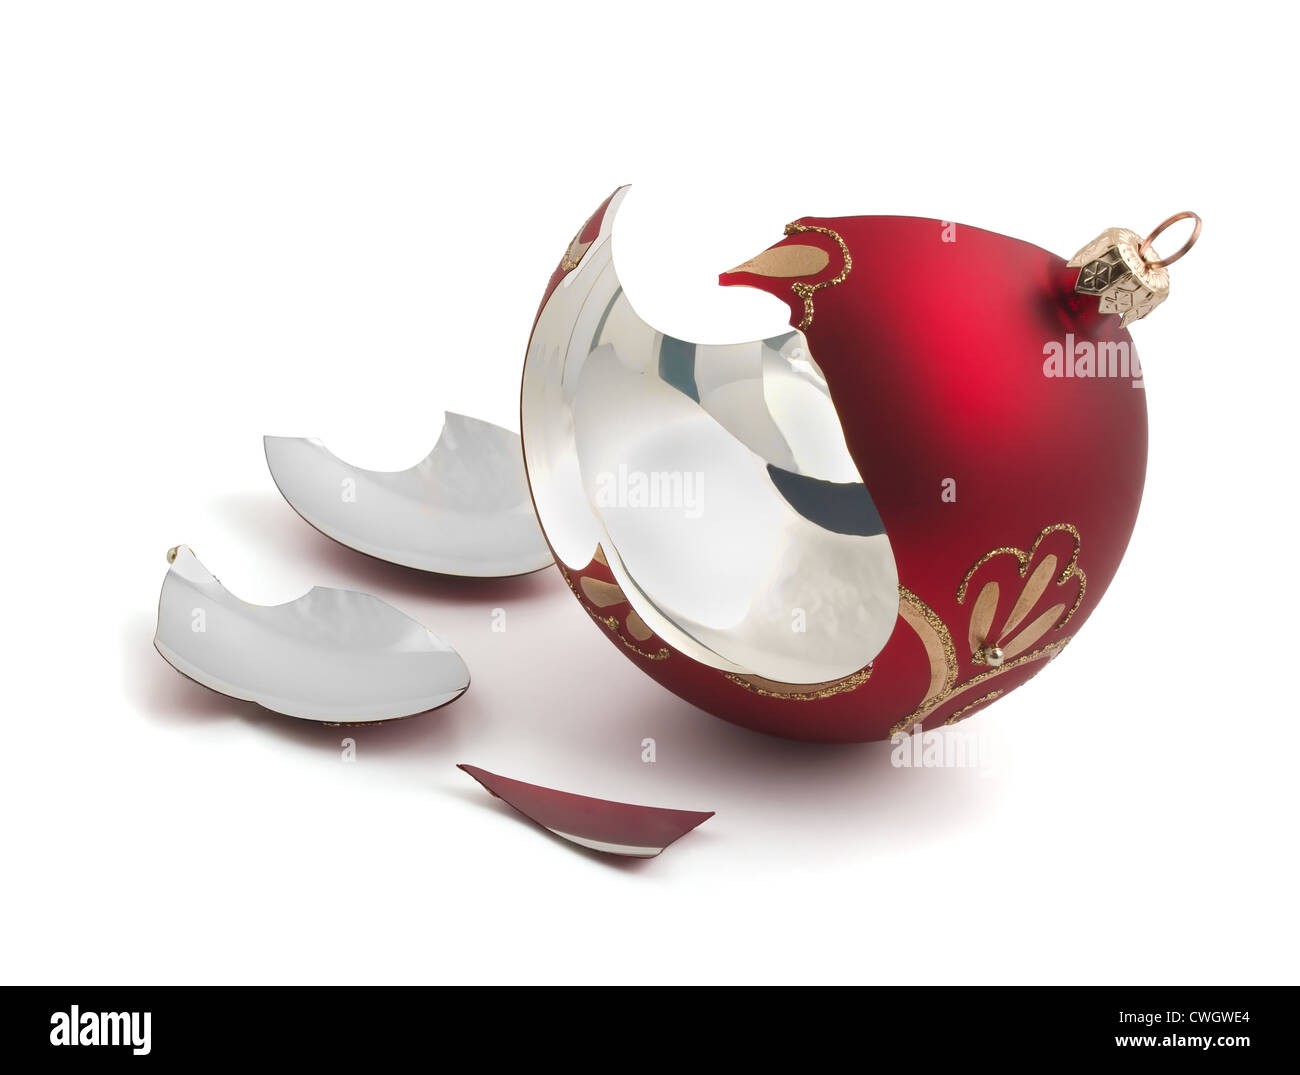 Boule de Noël en verre rouge cassée isolated on white Banque D'Images